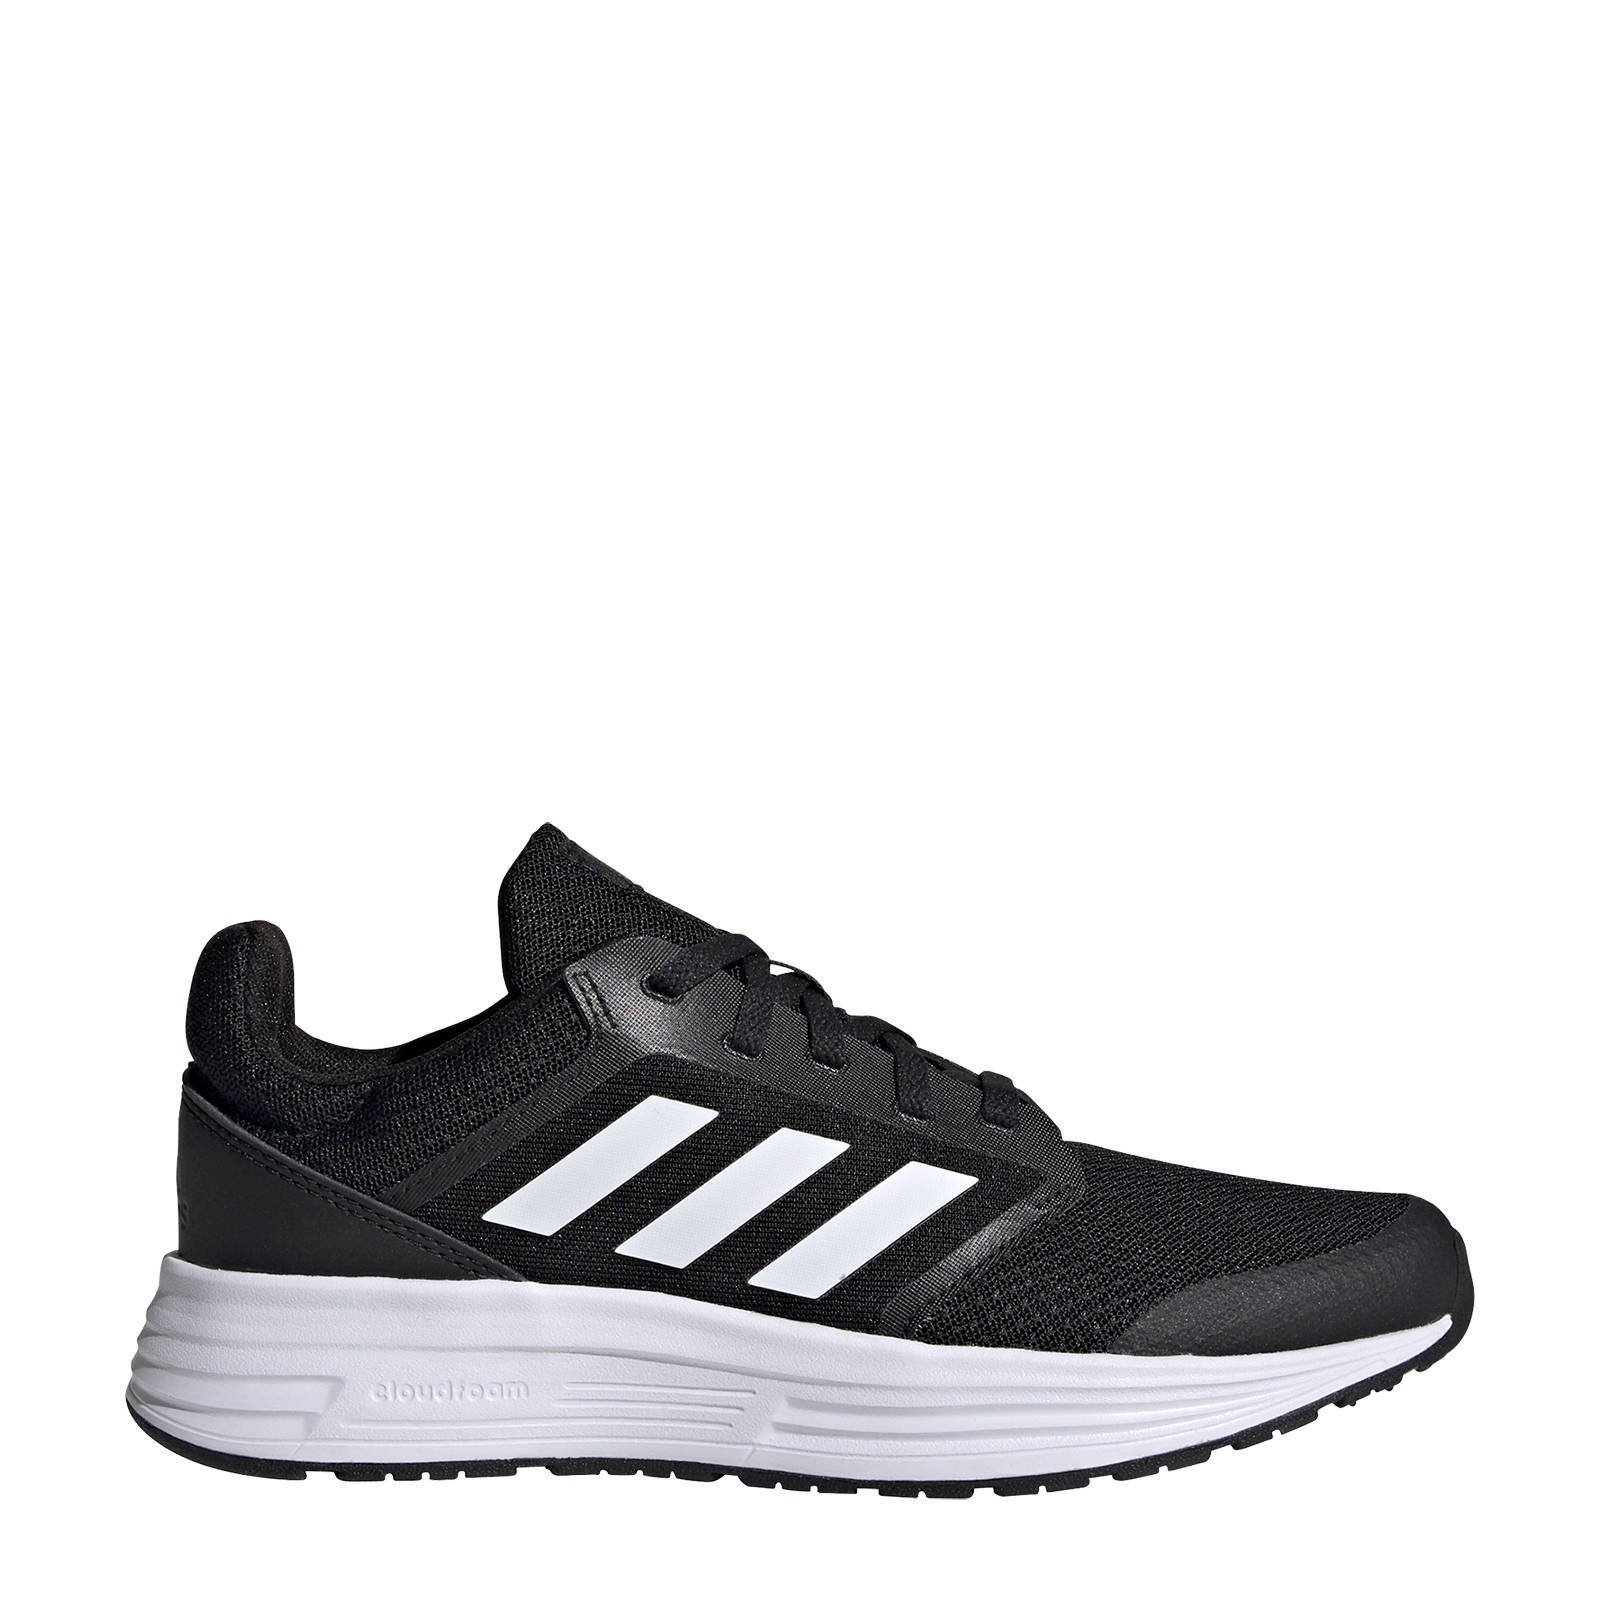 Adidas Performance Galaxy 6 Classic hardloopschoenen zwart/wit/grijs online kopen